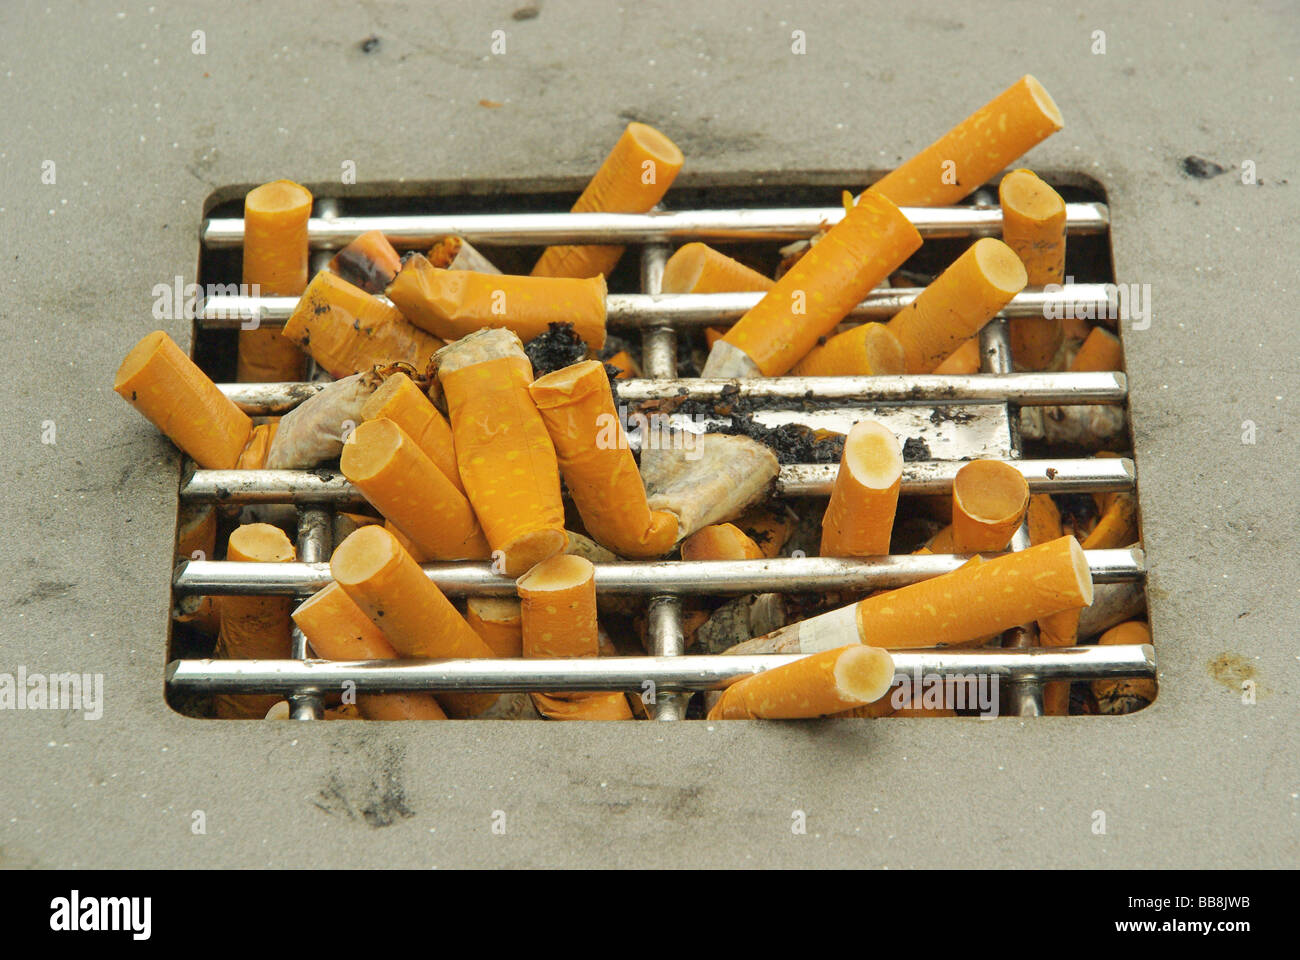 Zigarette cigarette 01 Stock Photo